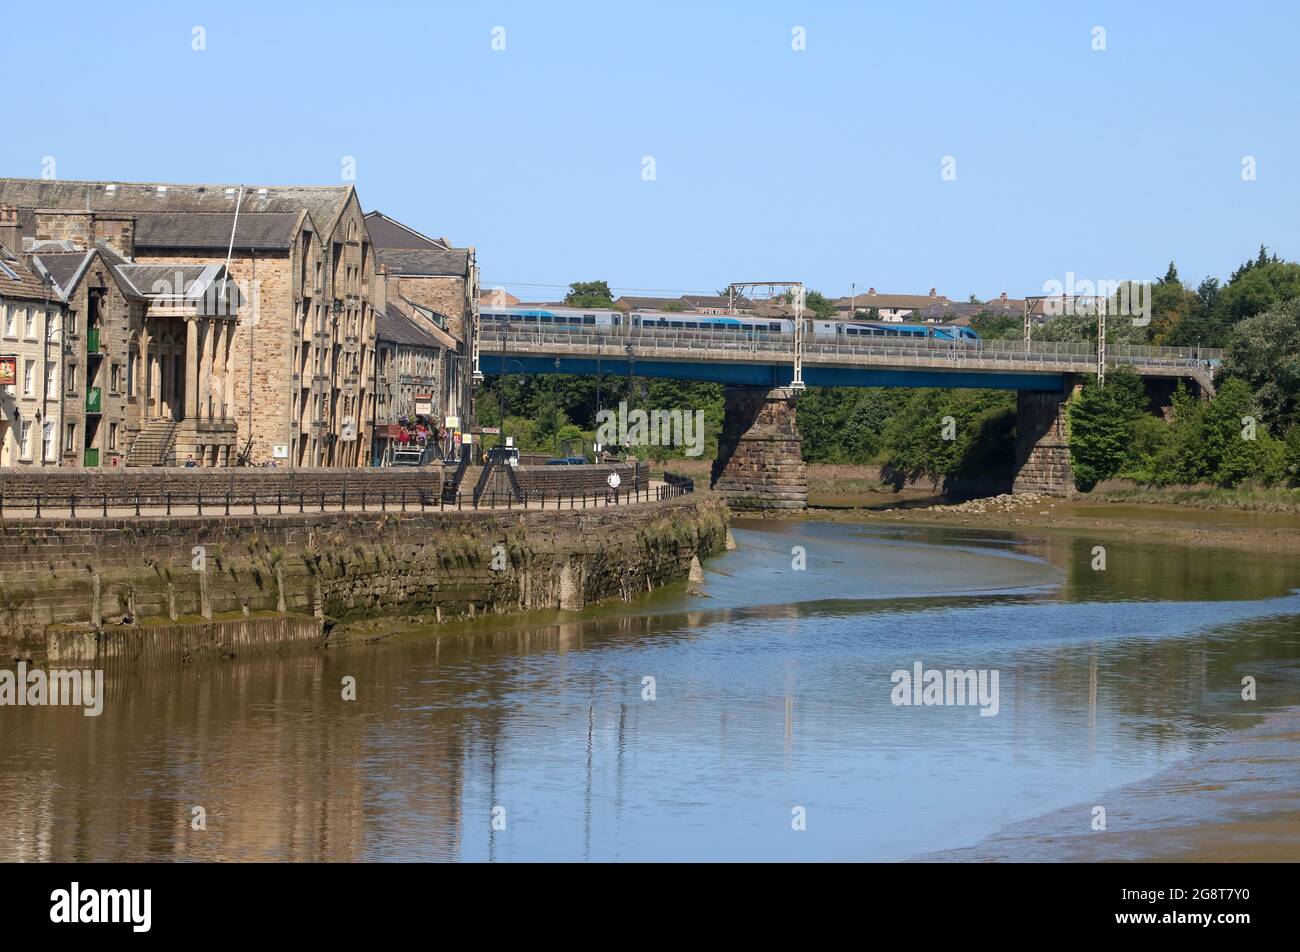 Blick auf den Fluss Lune in Lancaster, vorbei am St. George's Quay, zur Carlisle Bridge mit dem Elektrozug der West Coast Main Line, 17. Juli 2021. Stockfoto